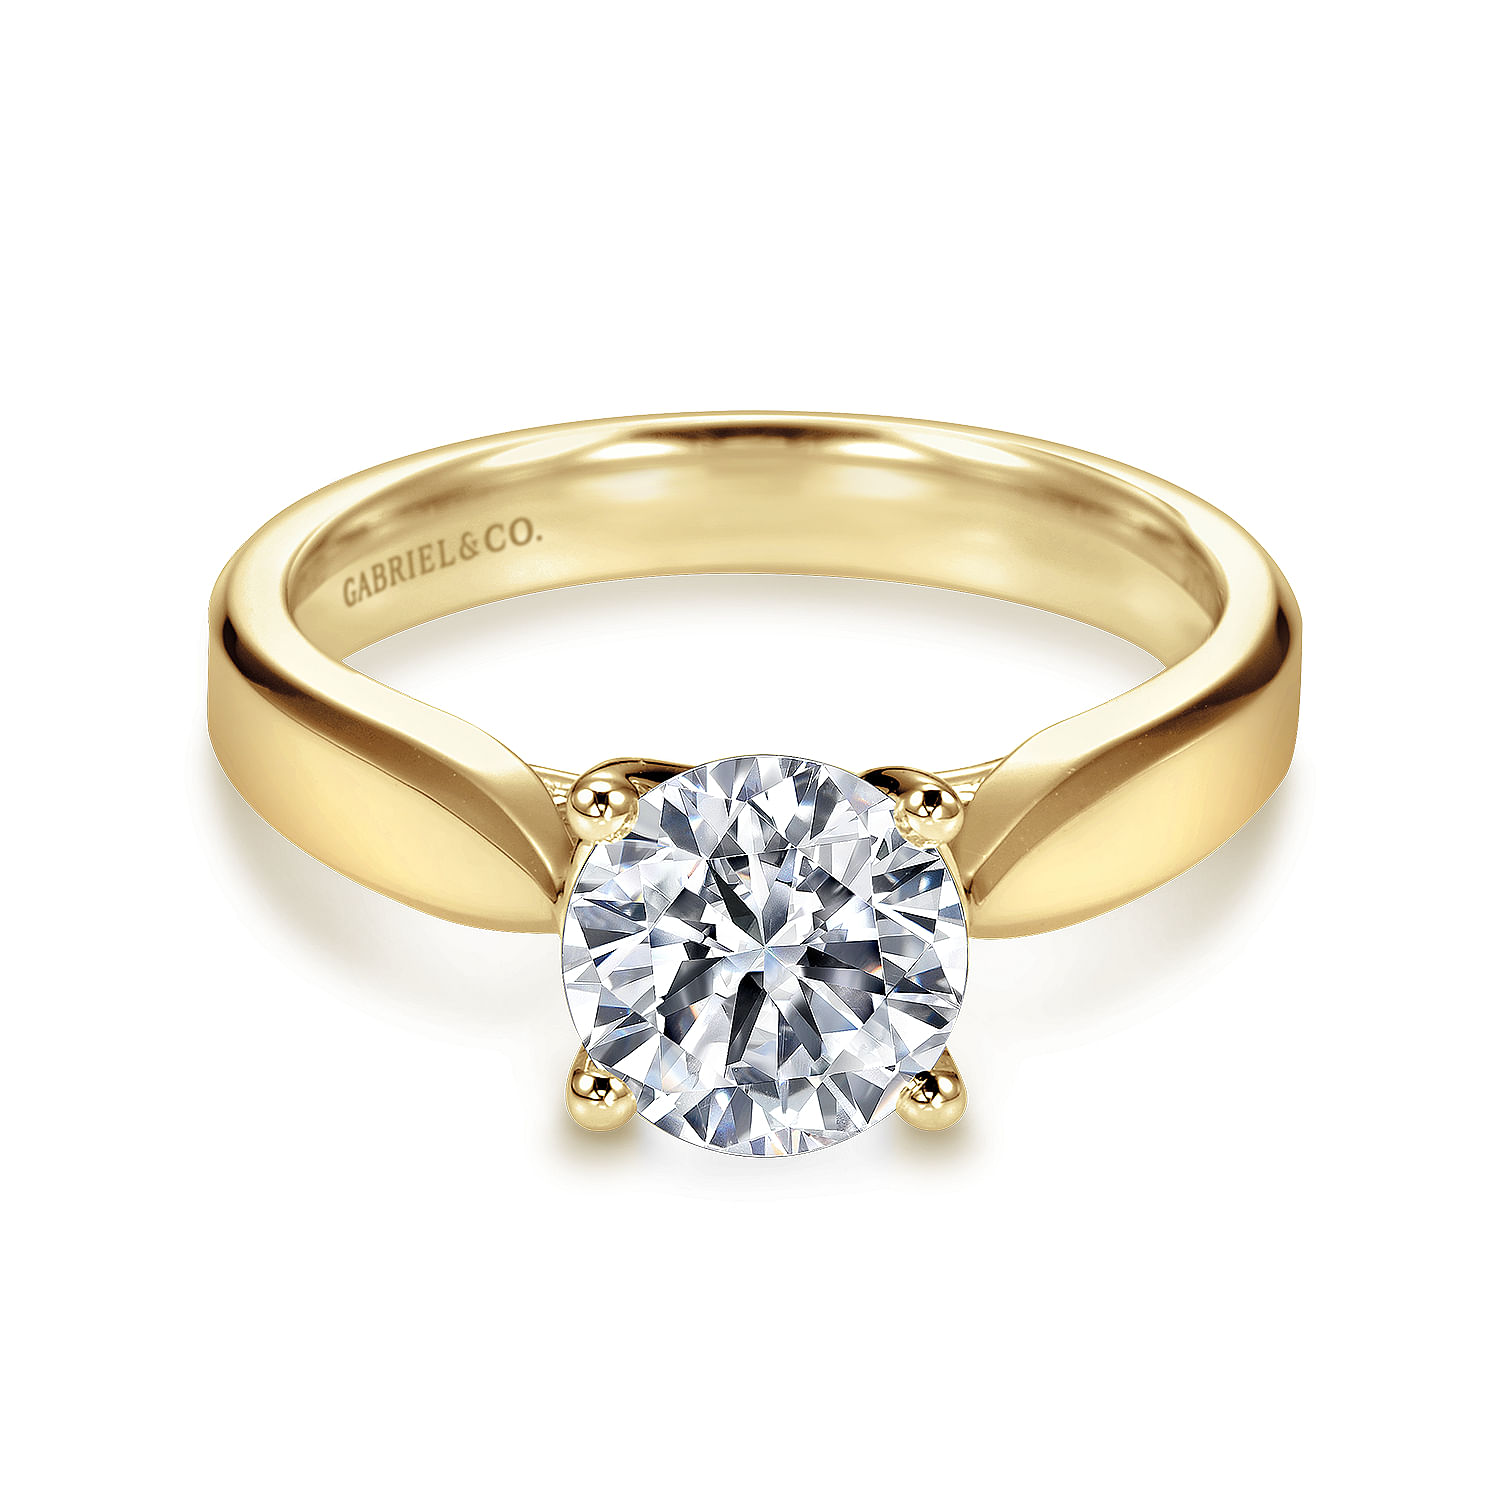 Jamie - 14K Yellow Gold Round Diamond Engagement Ring